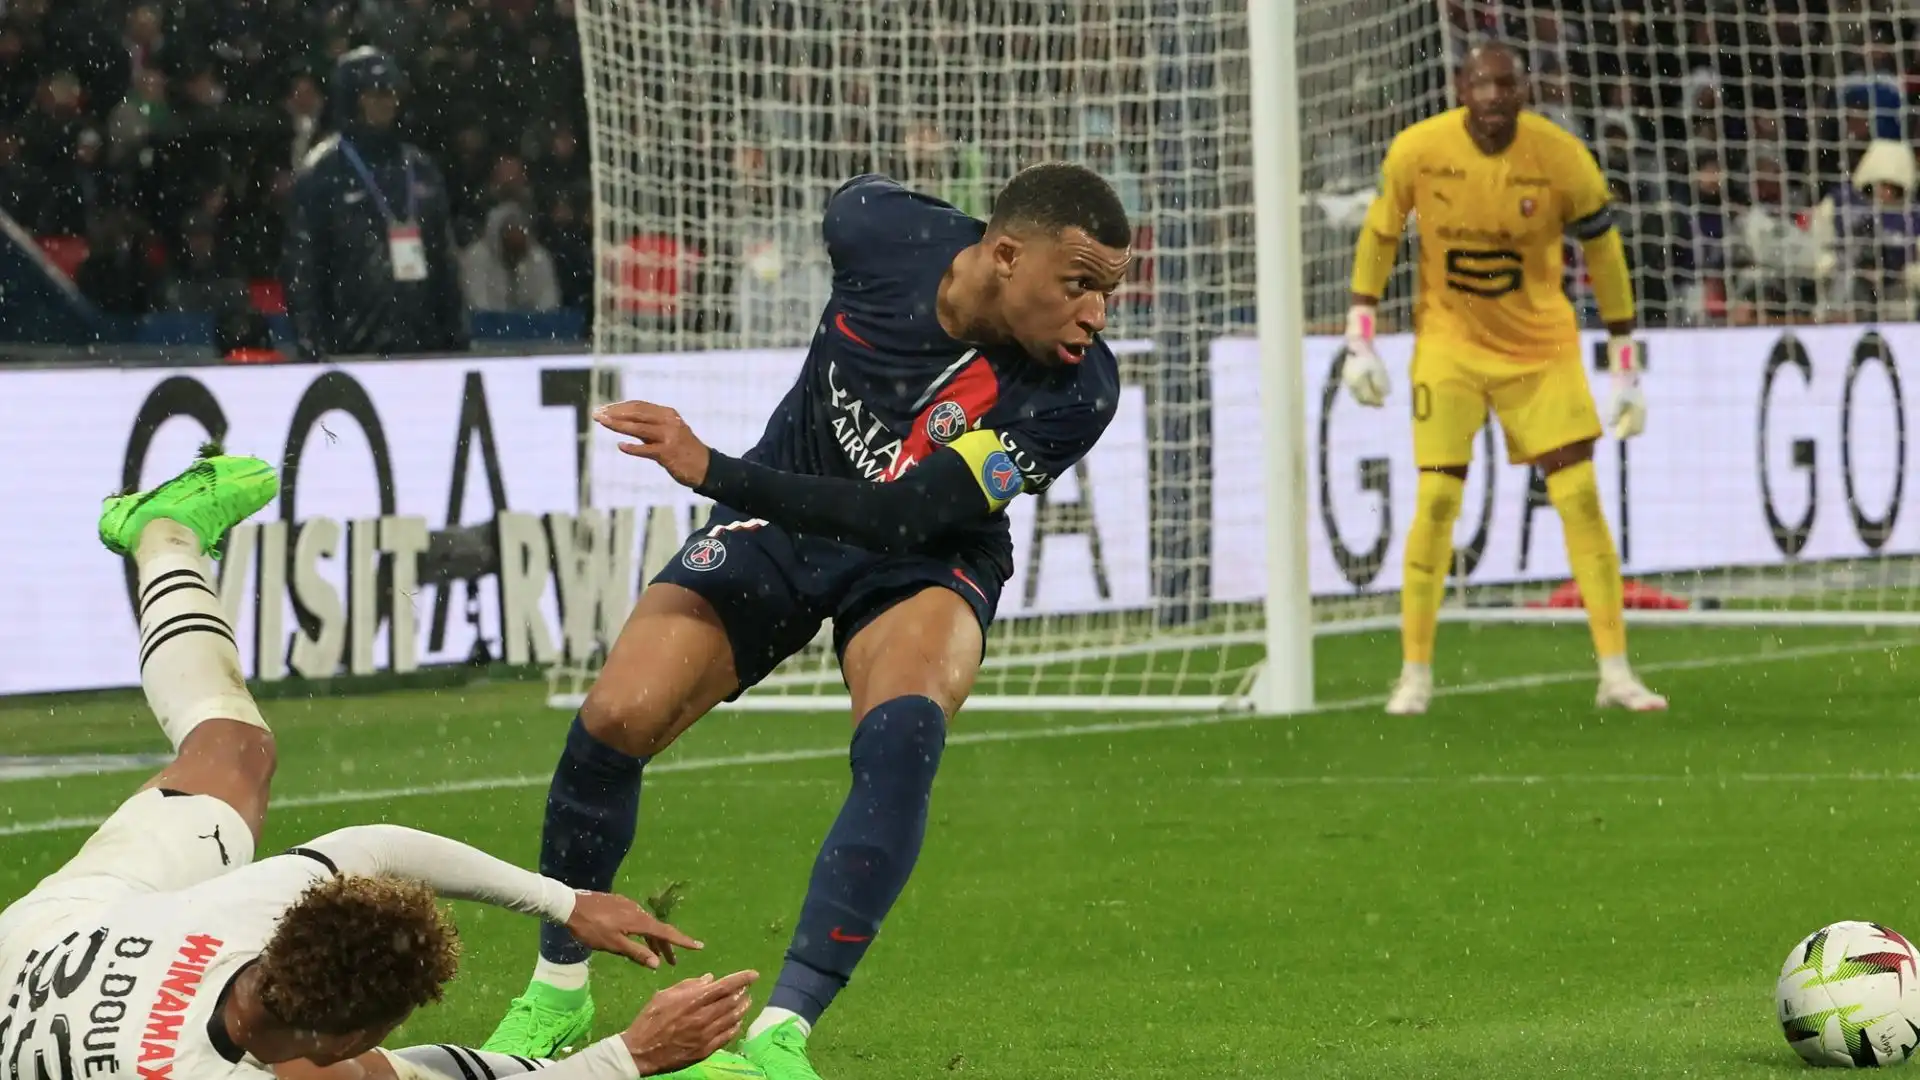 L'attaccante francese ha realizzato oltre 300 gol in carriera